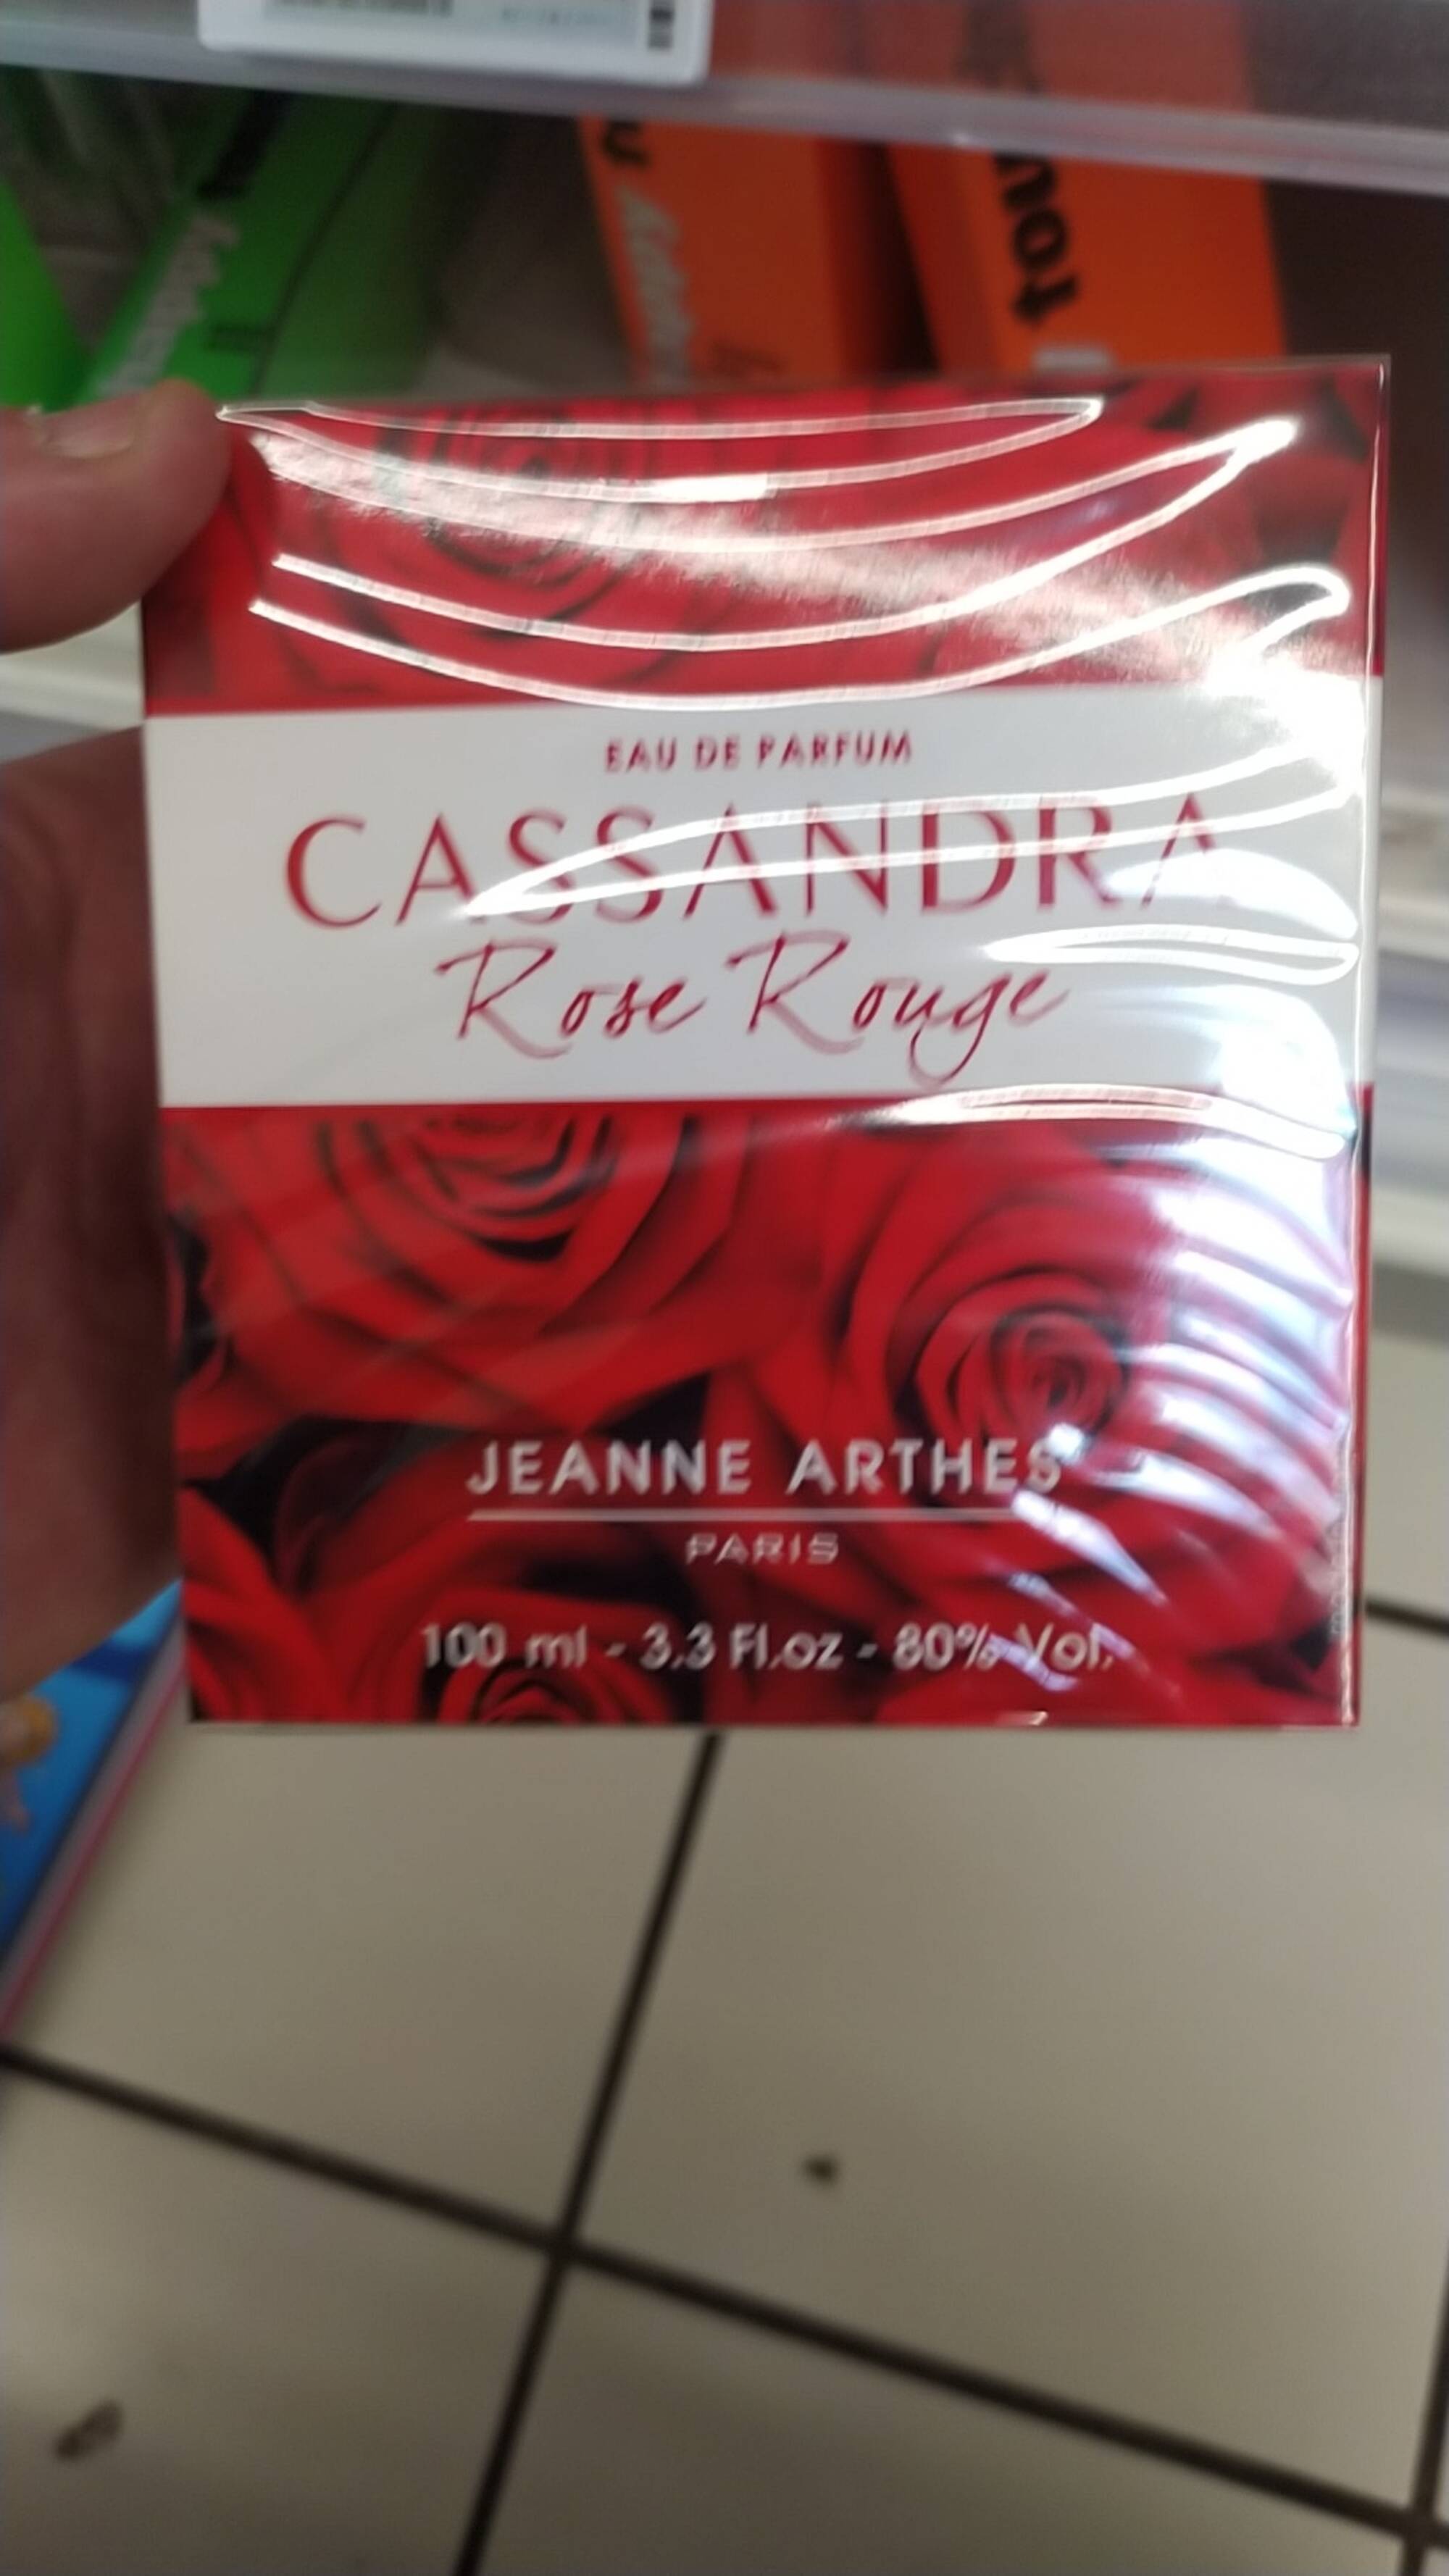 JEANNE ARTHES - Cassandra rose rouge - Eau de parfum